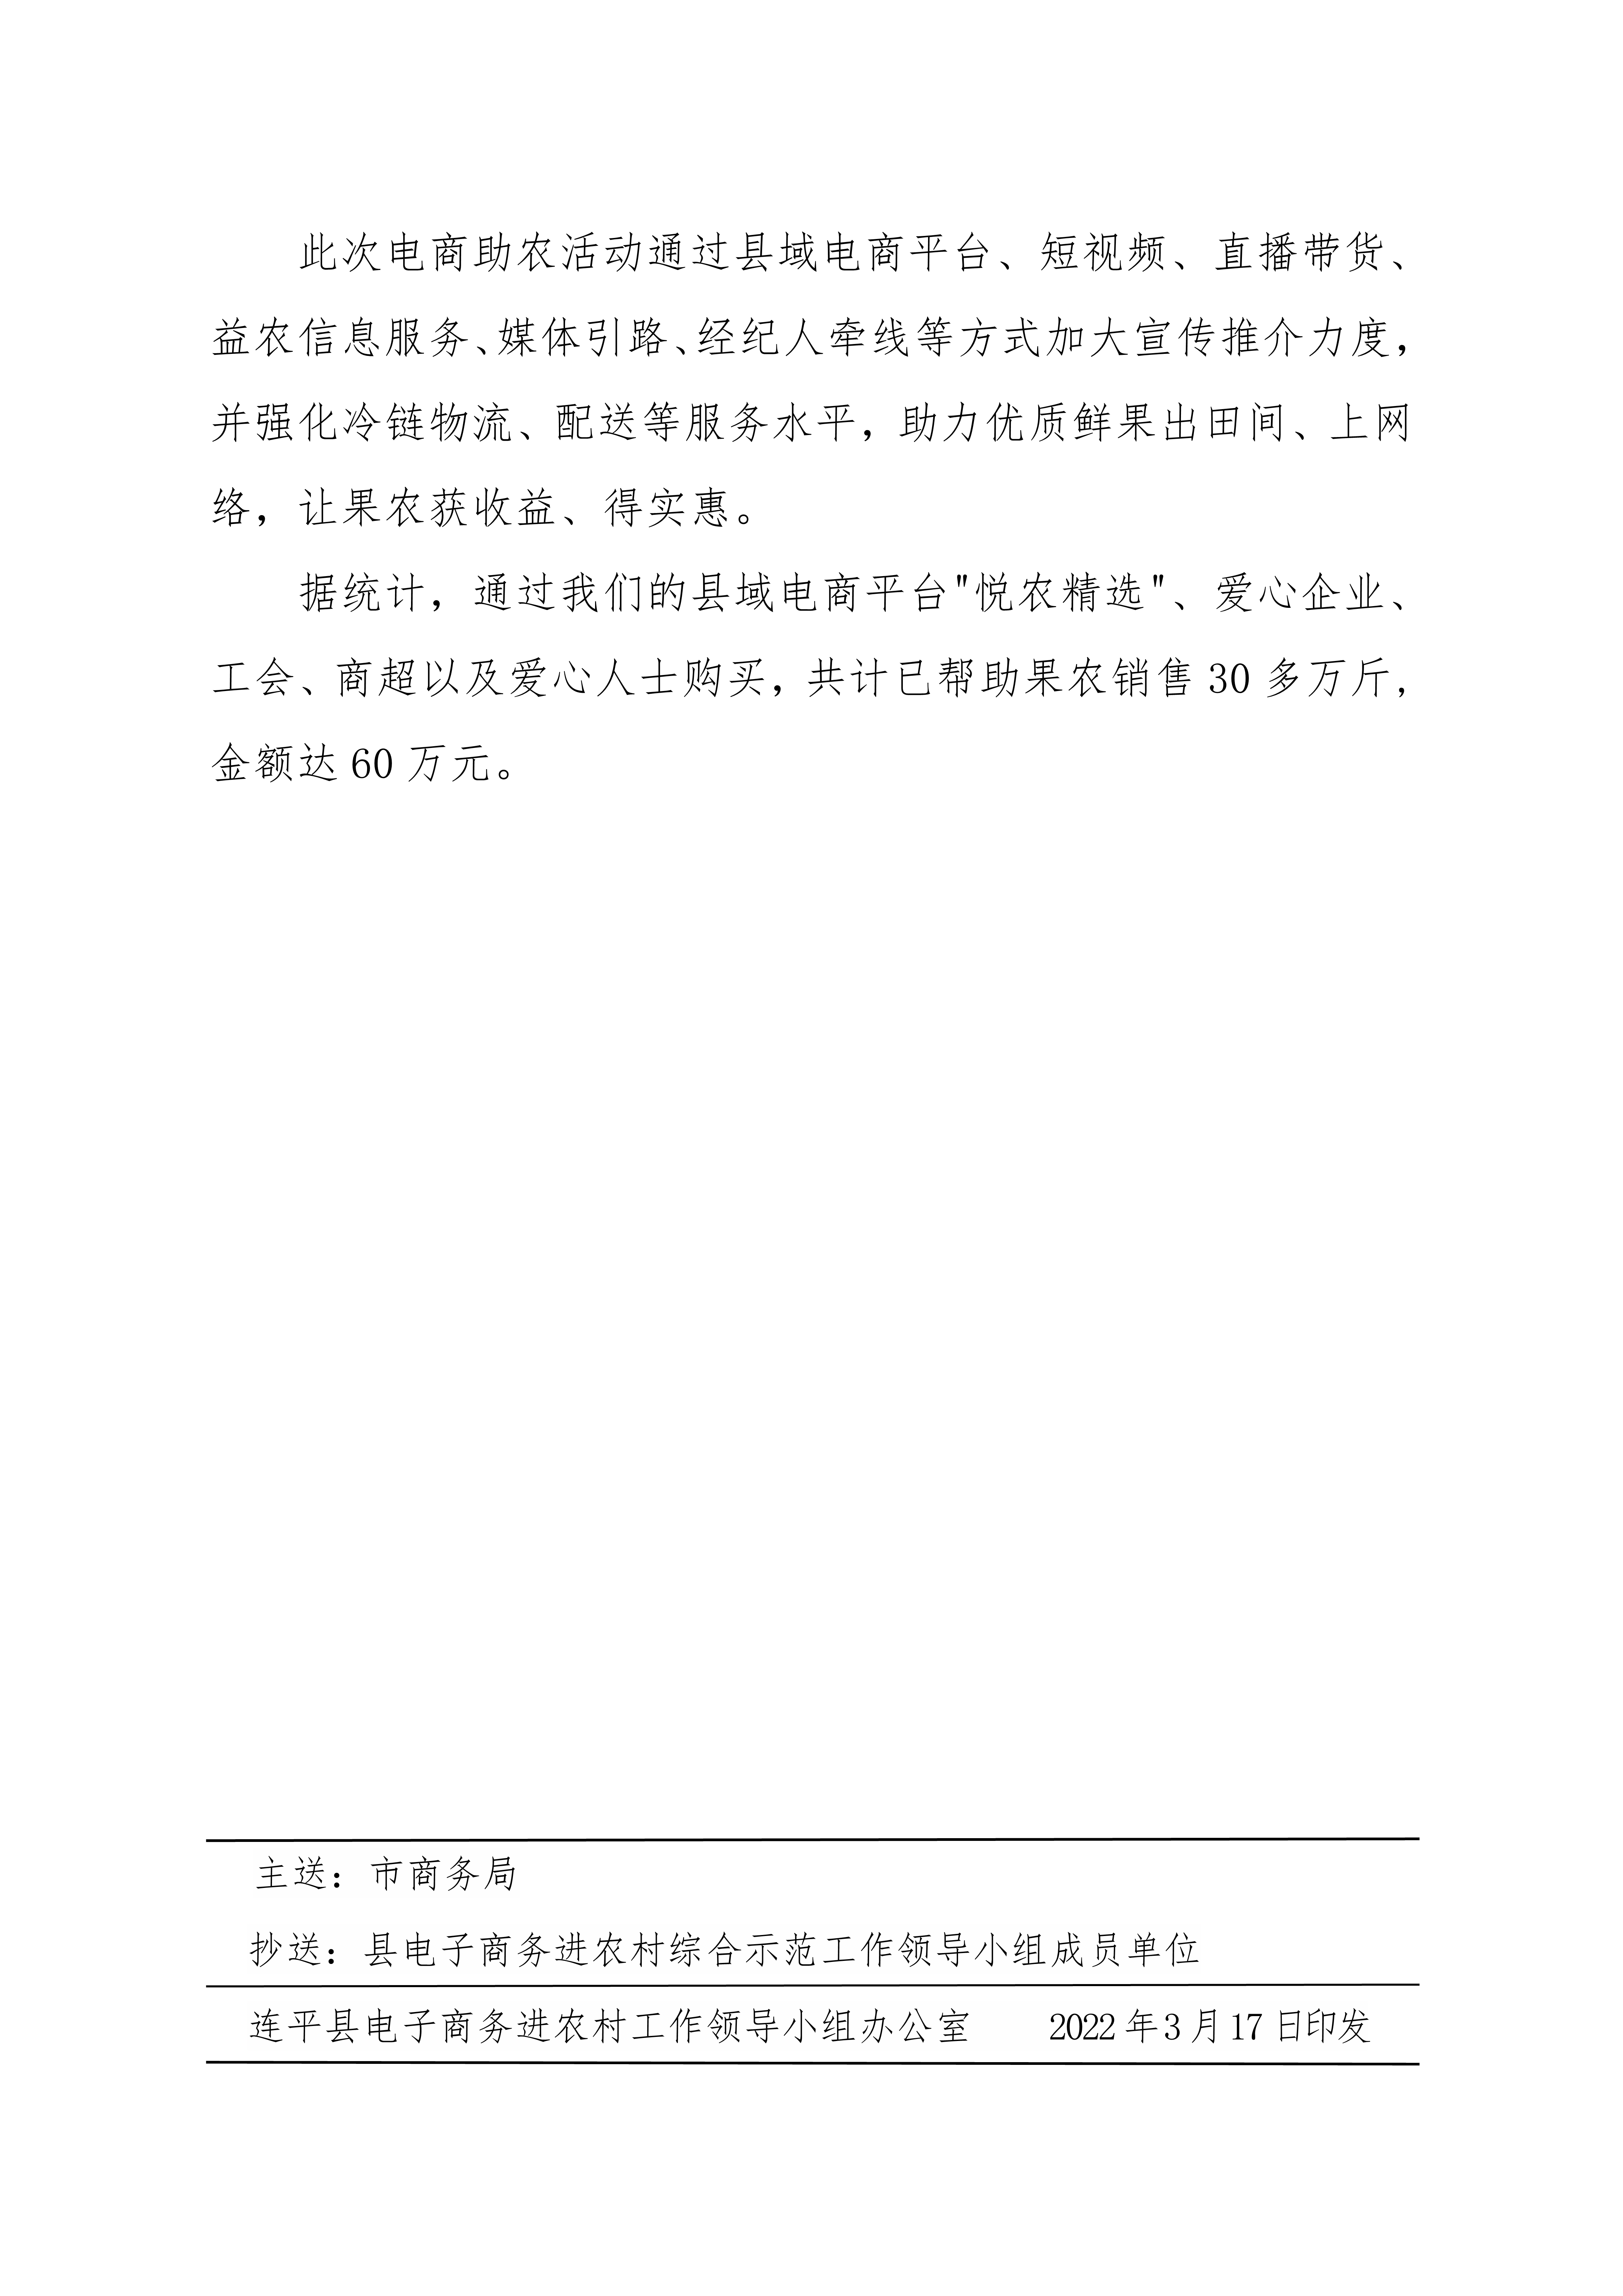 1连平县电子商务进农村综合示范县项目工作简报第19期_4.jpg